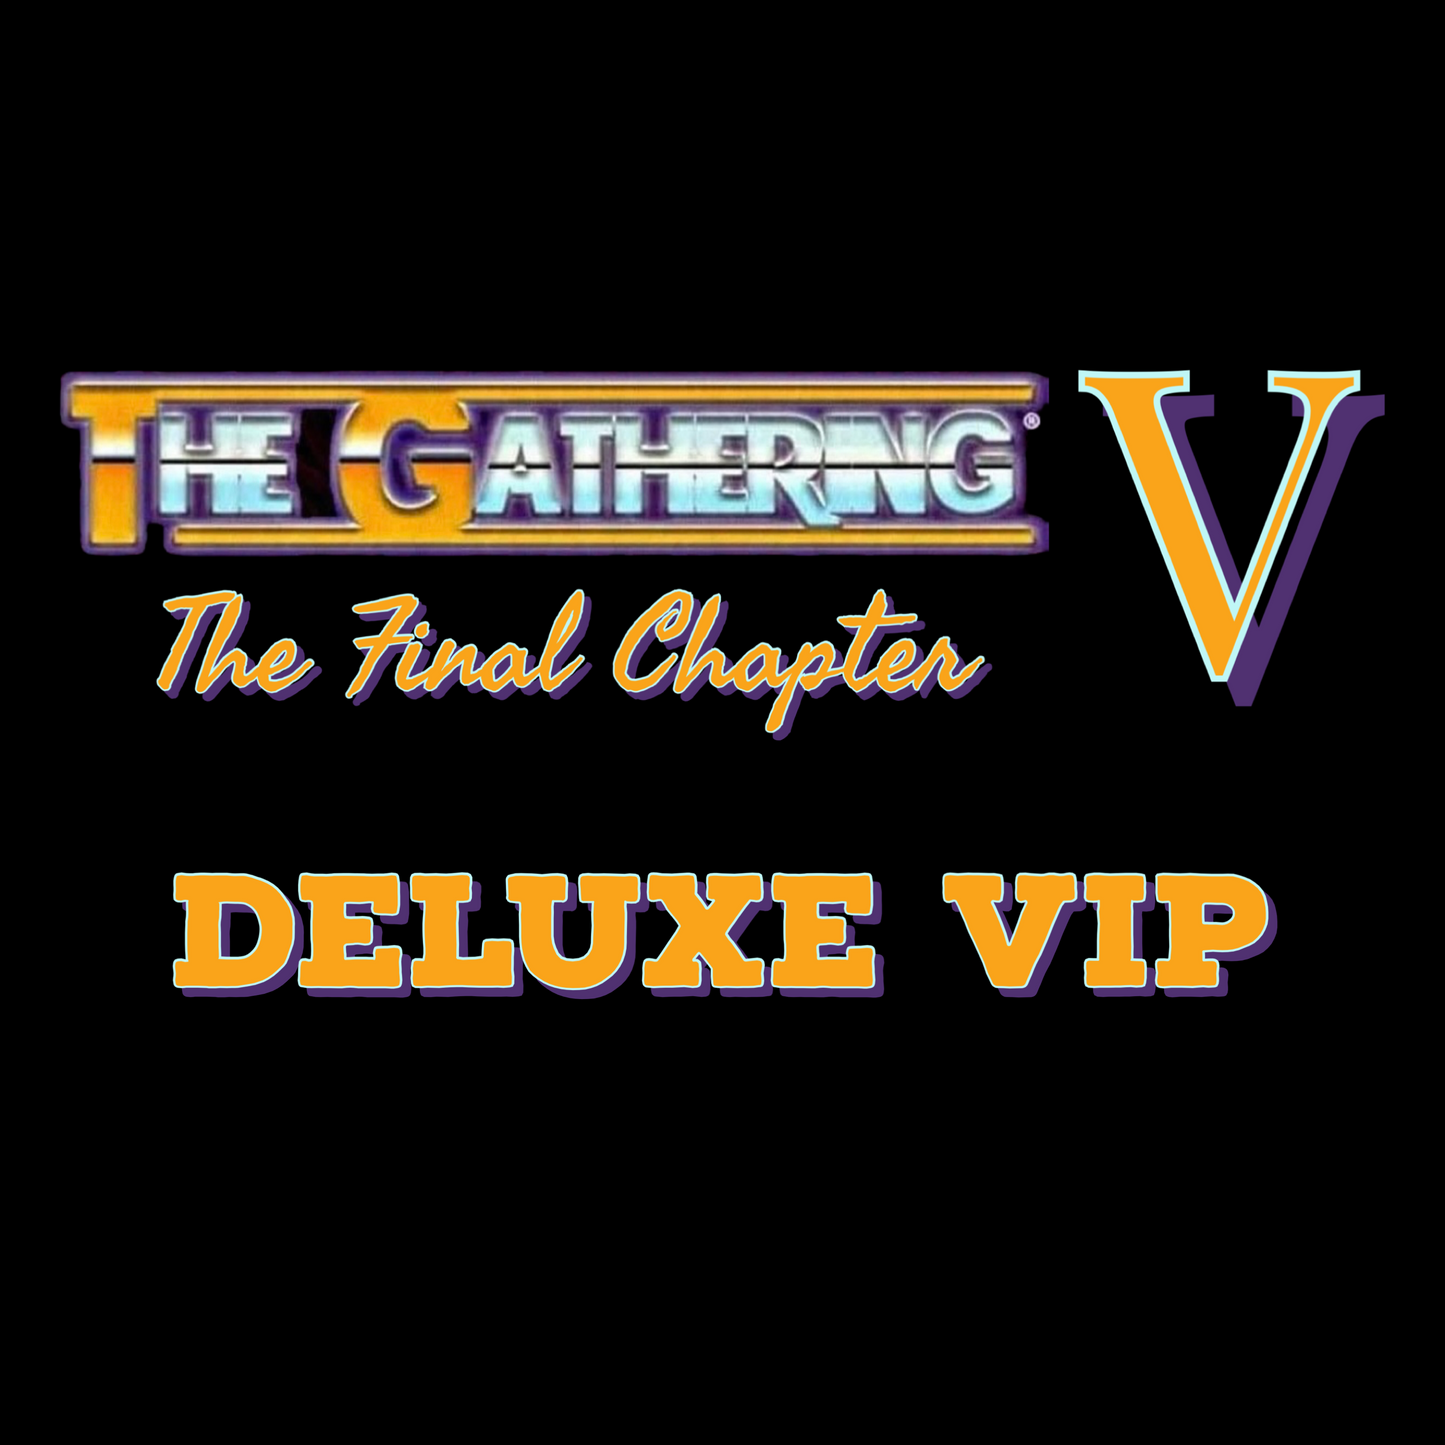 Deluxe VIP